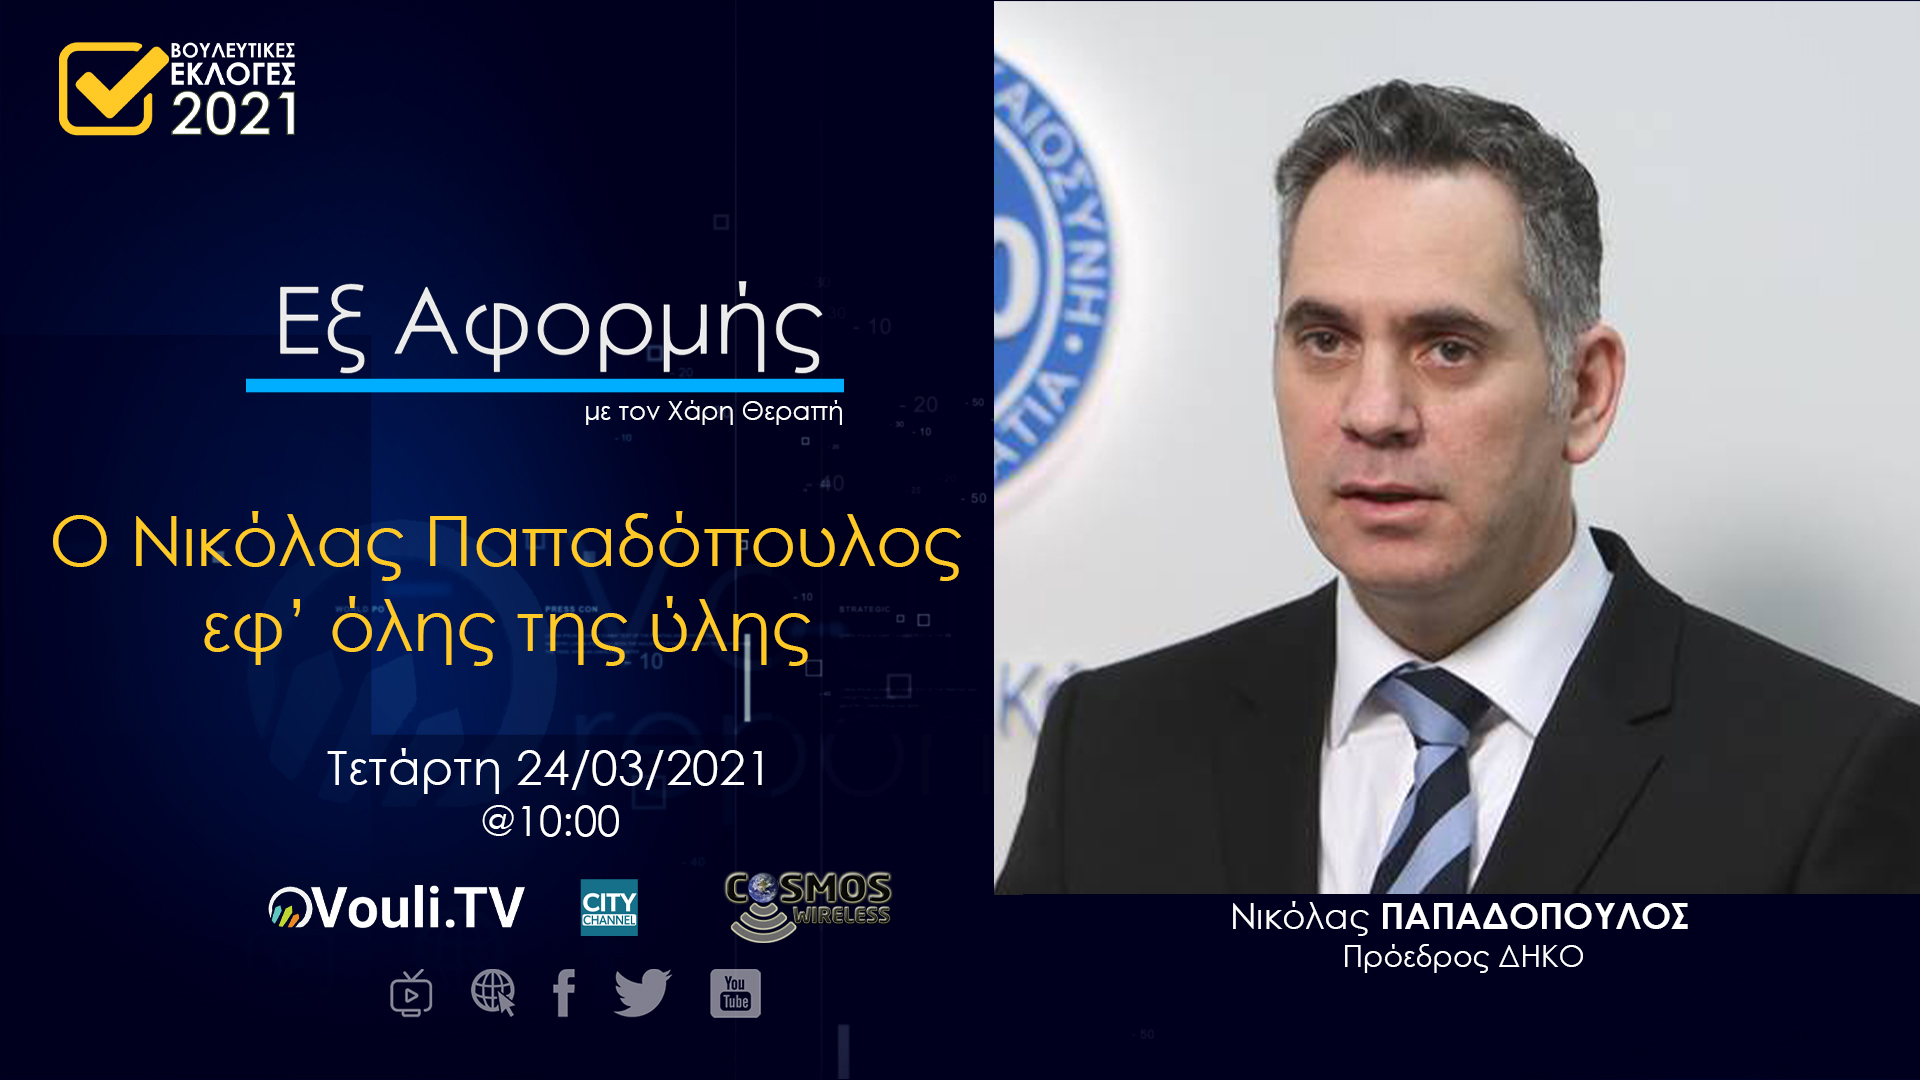 Εξ Αφορμής | Νικόλας Παπαδόπουλος, 24/03/2021